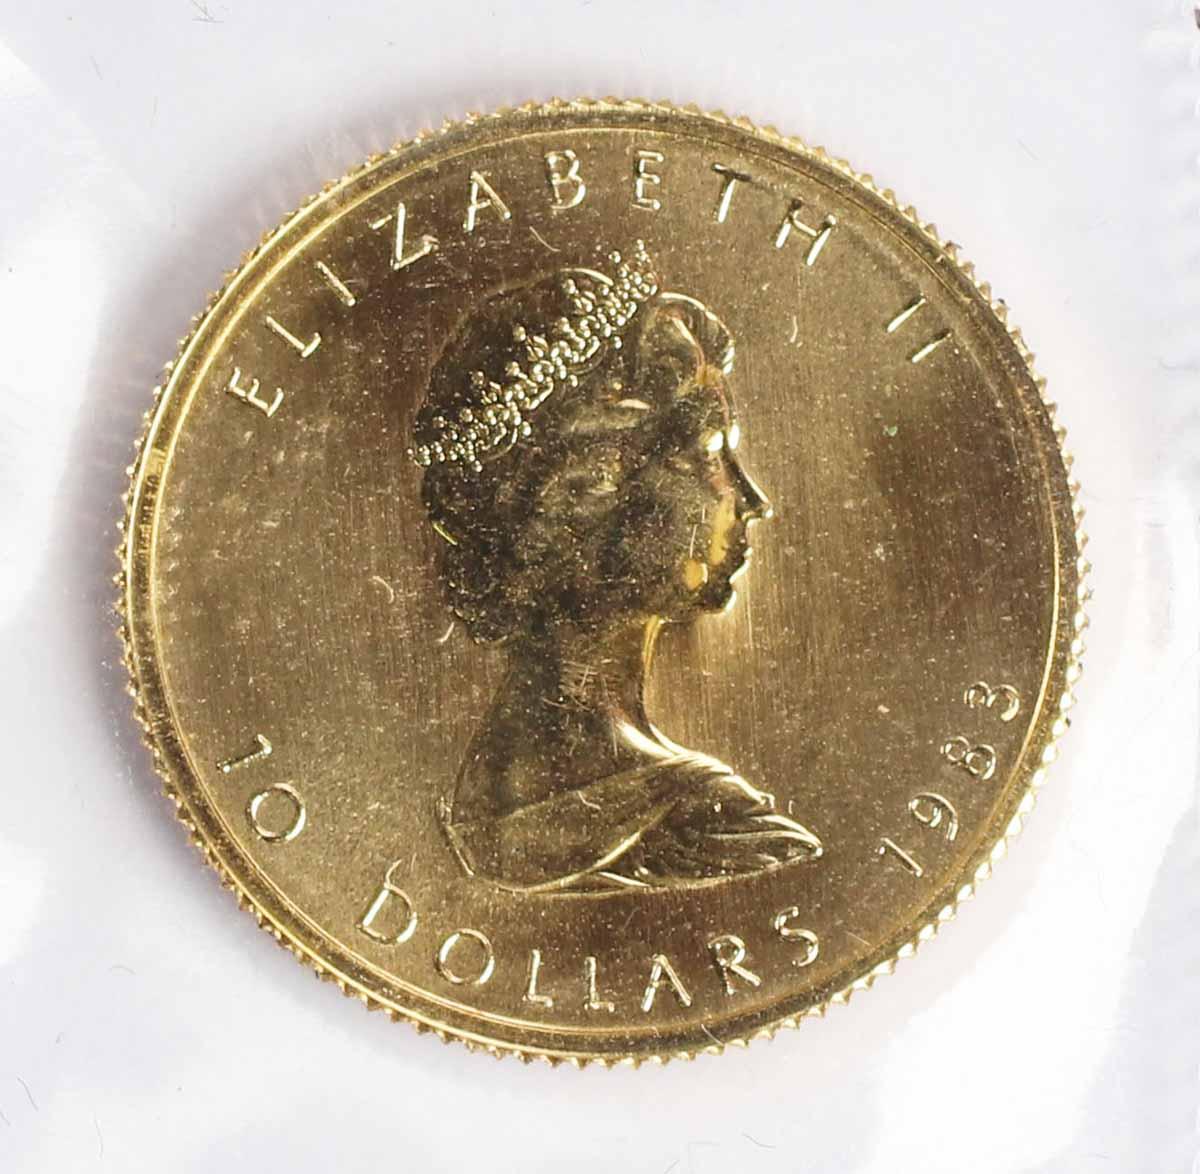 1983 Canada 1/4 oz .999 Gold Maple Leaf/Elizabeth II $5 Coin